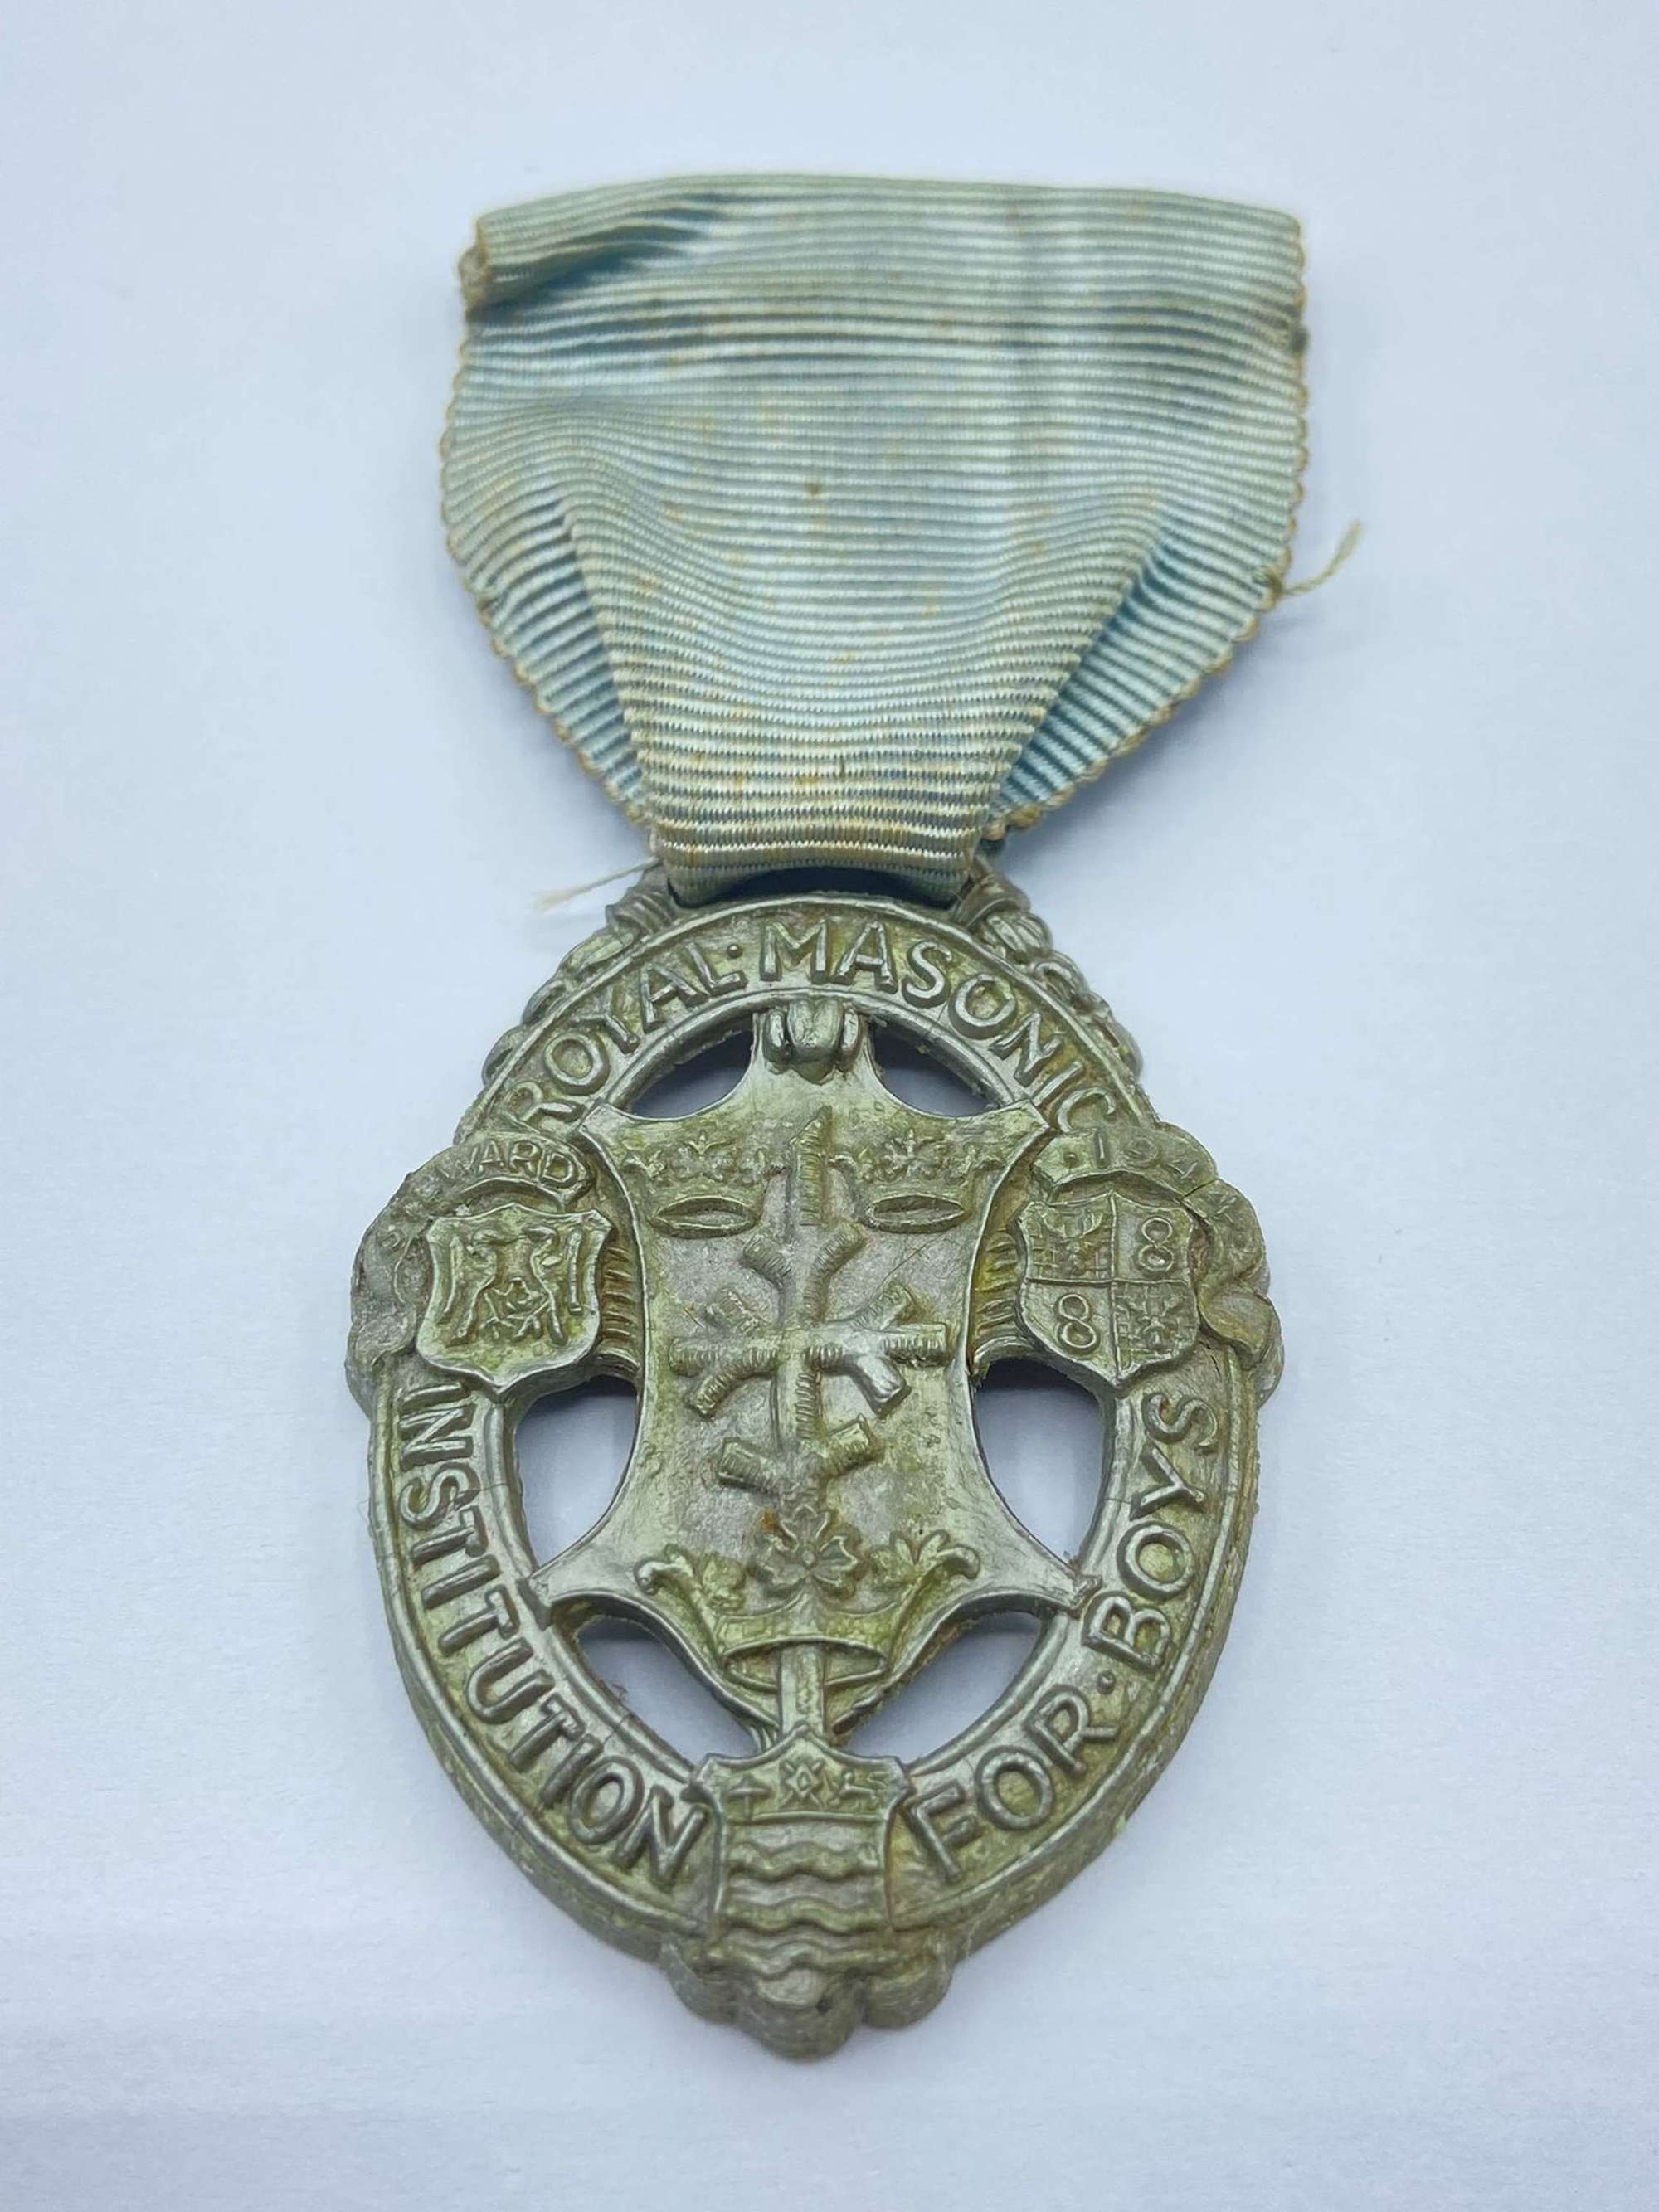 WW2 Economy Made Royal Mason Institution For Boys Bakelite Medal